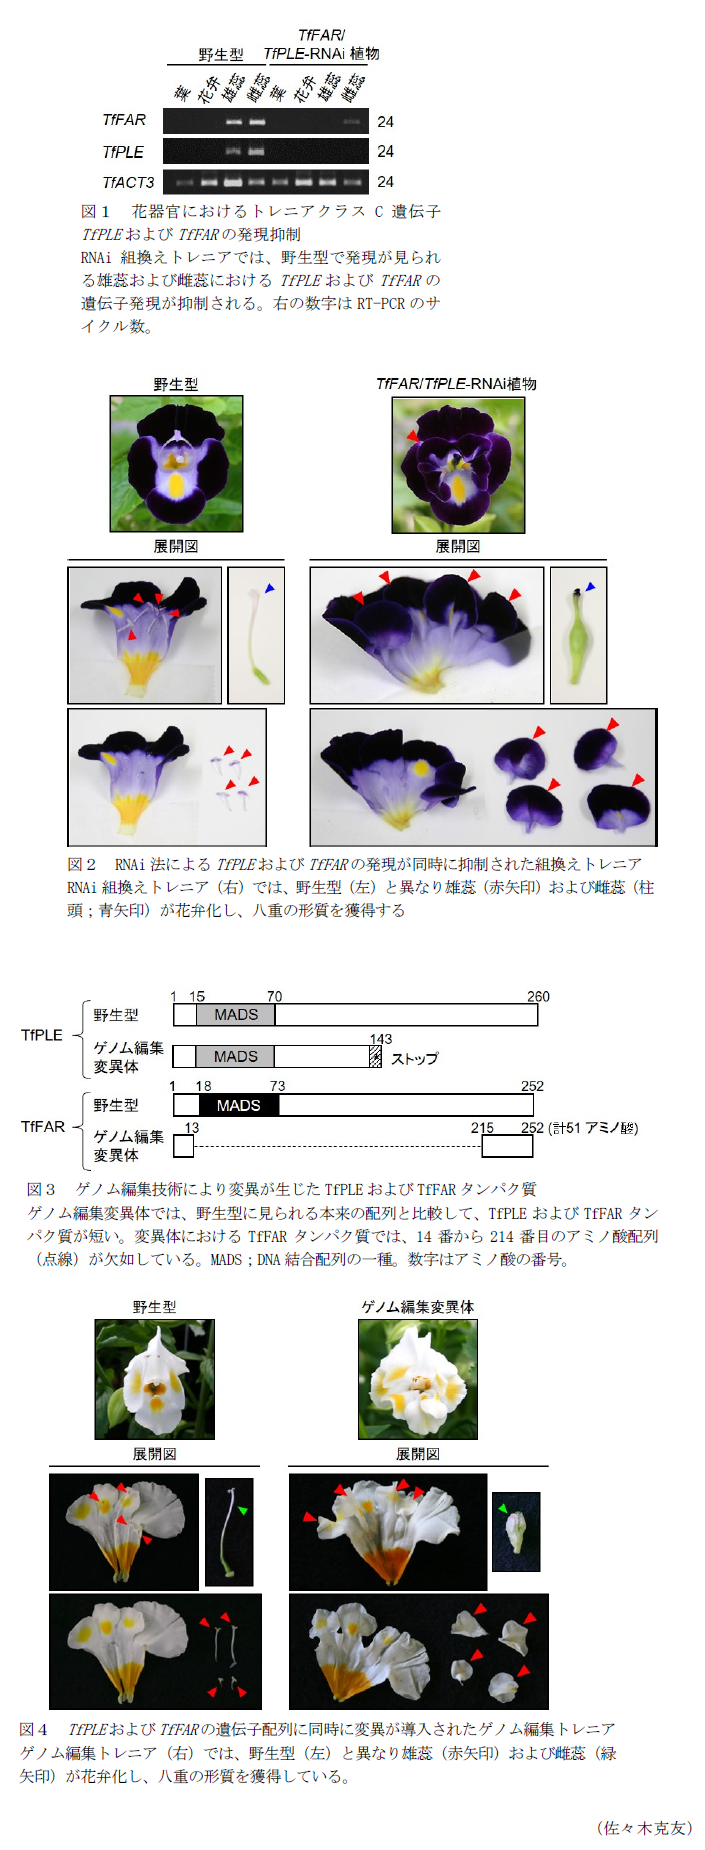 図1 花器官におけるトレニアクラスC遺伝子TfPLEおよびTfFARの発現抑制,図2 RNAi法によるTfPLEおよびTfFARの発現が同時に抑制された組換えトレニア,図3 ゲノム編集技術により変異が生じたTfPLEおよびTfFARタンパク質,図4 TfPLEおよびTfFARの遺伝子配列に同時に変異が導入されたゲノム編集トレニア